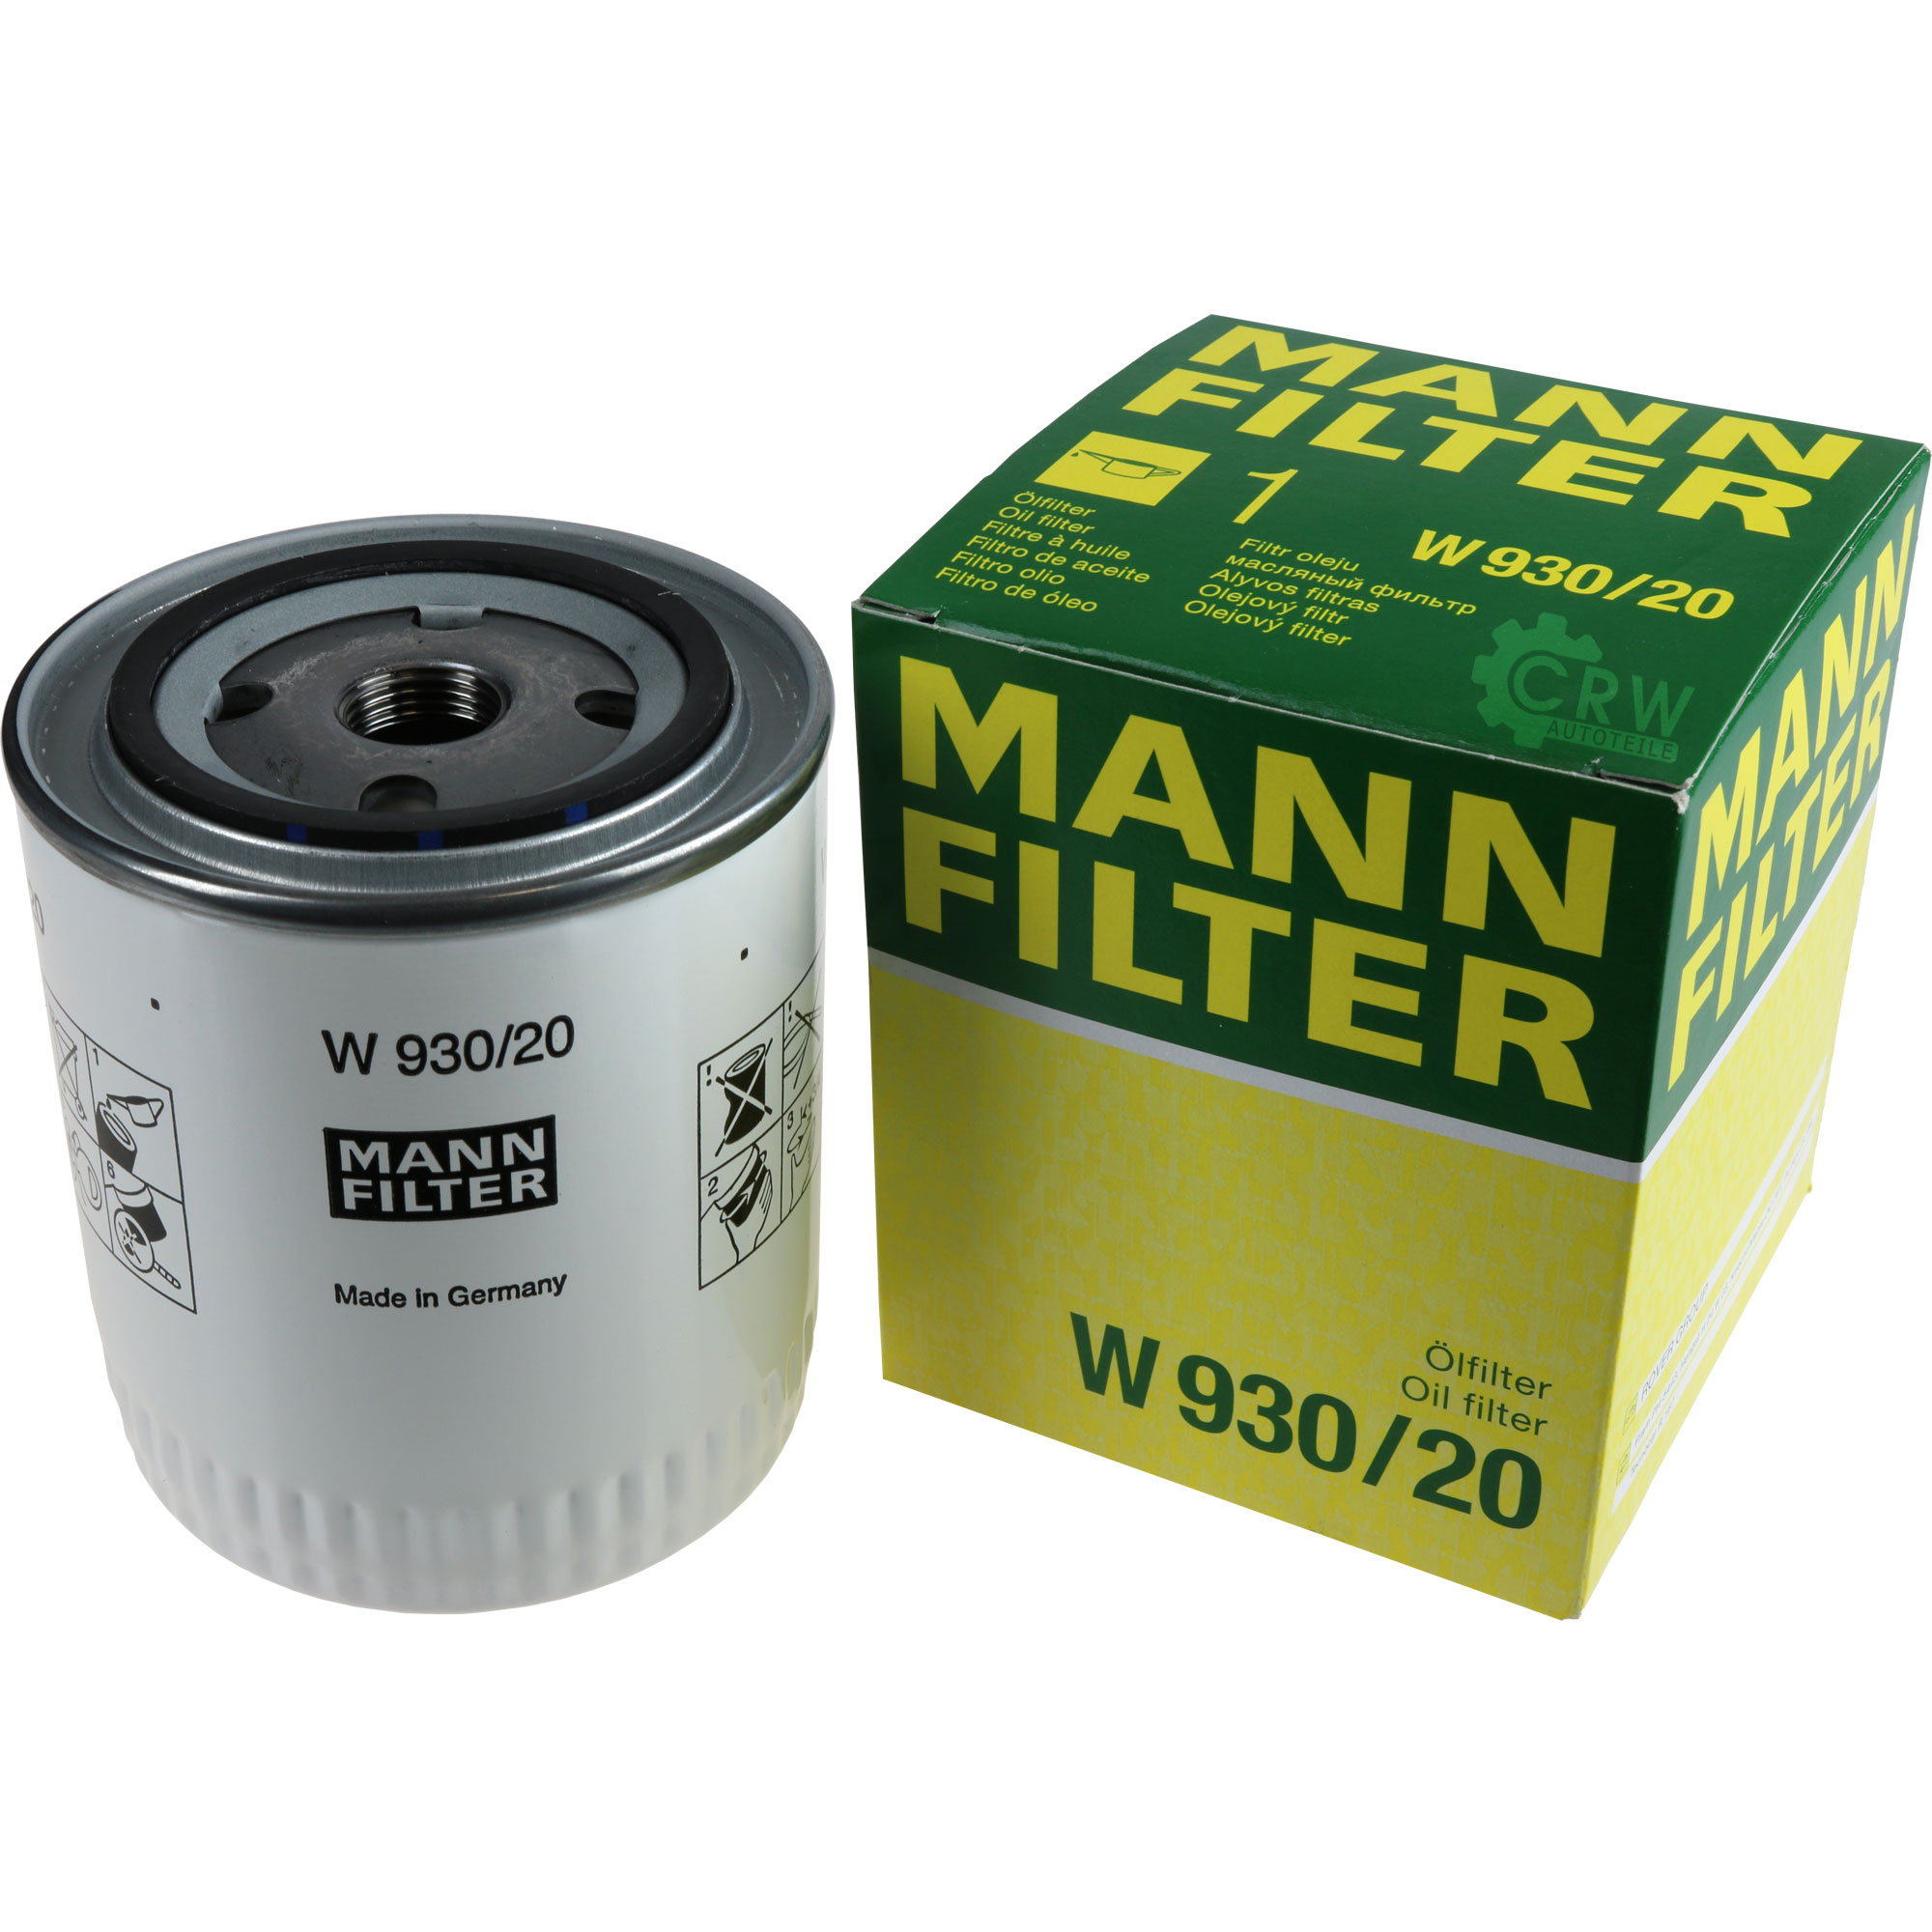 MANN-FILTER Ölfilter W 930/20 Oil Filter